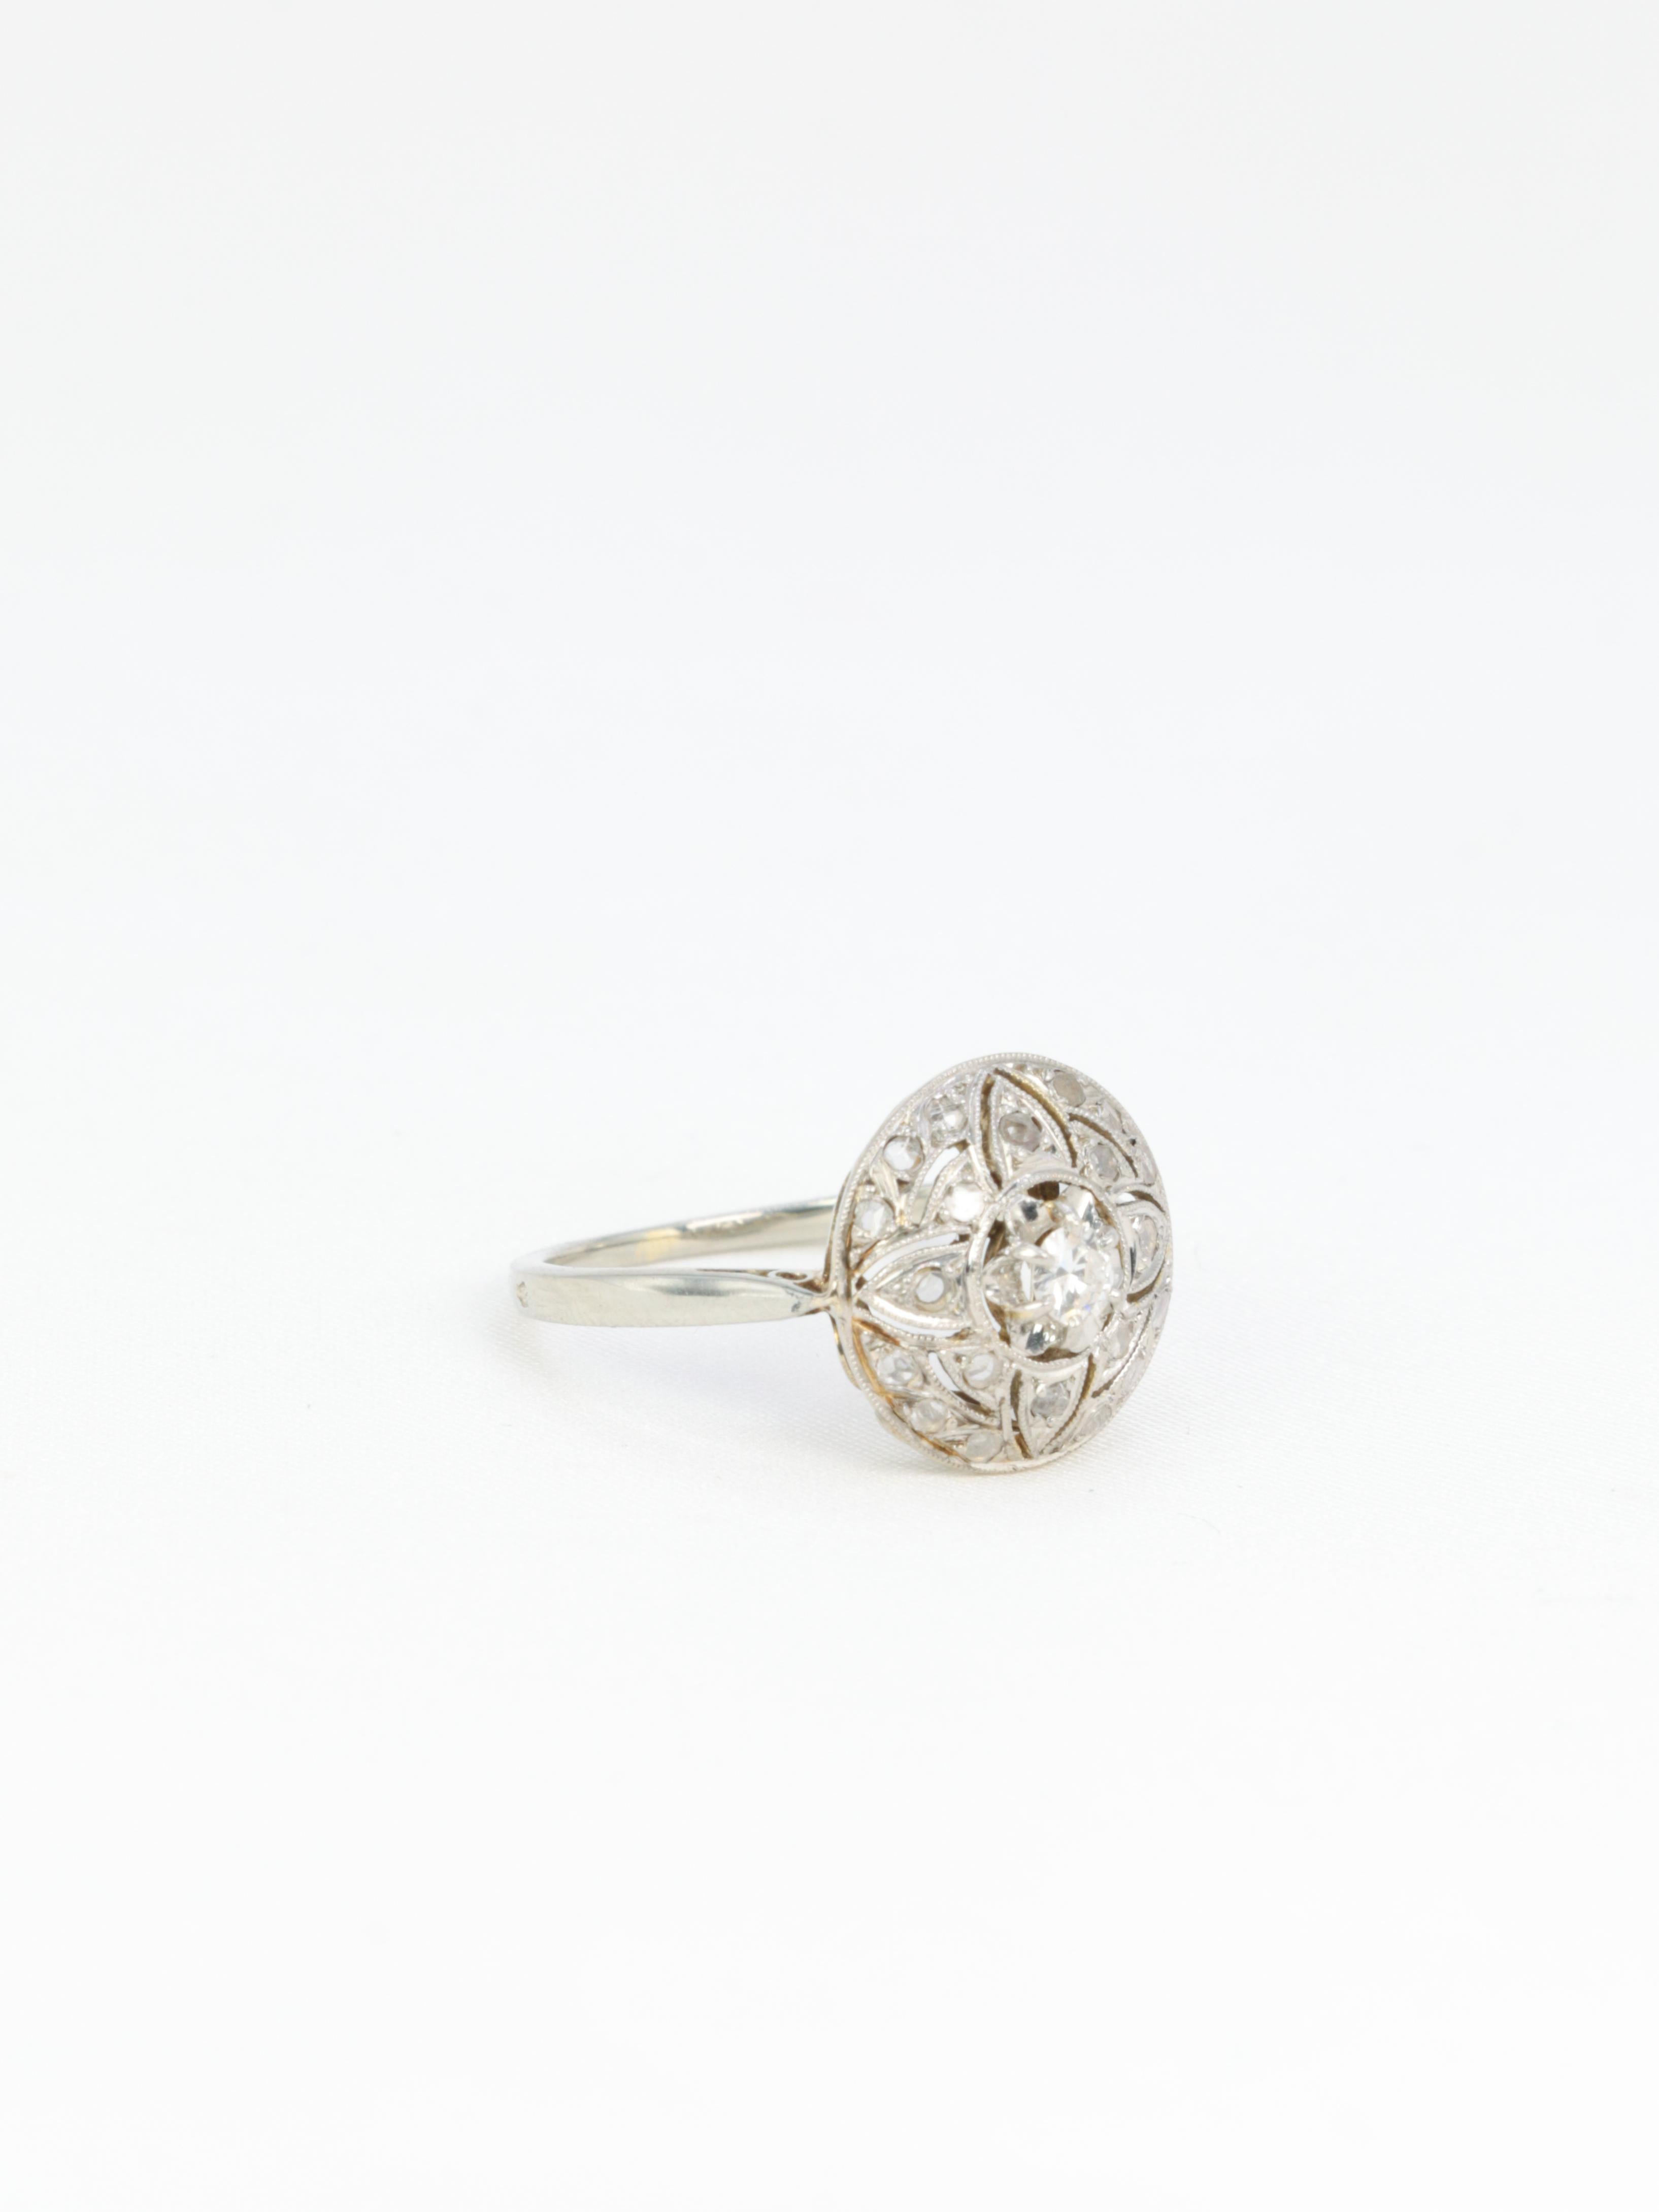 Ring aus 18 Kt (750°/°°) Weißgold mit einer Kuppel mit floralen Mustern, besetzt mit Diamanten im Rosenschliff von ca. 0,3 Karat. In der Mitte ein größerer Diamant im Brillantschliff mit einem Gewicht von ca. 0,15 Karat, Qualität G SI2 (mit bloßem